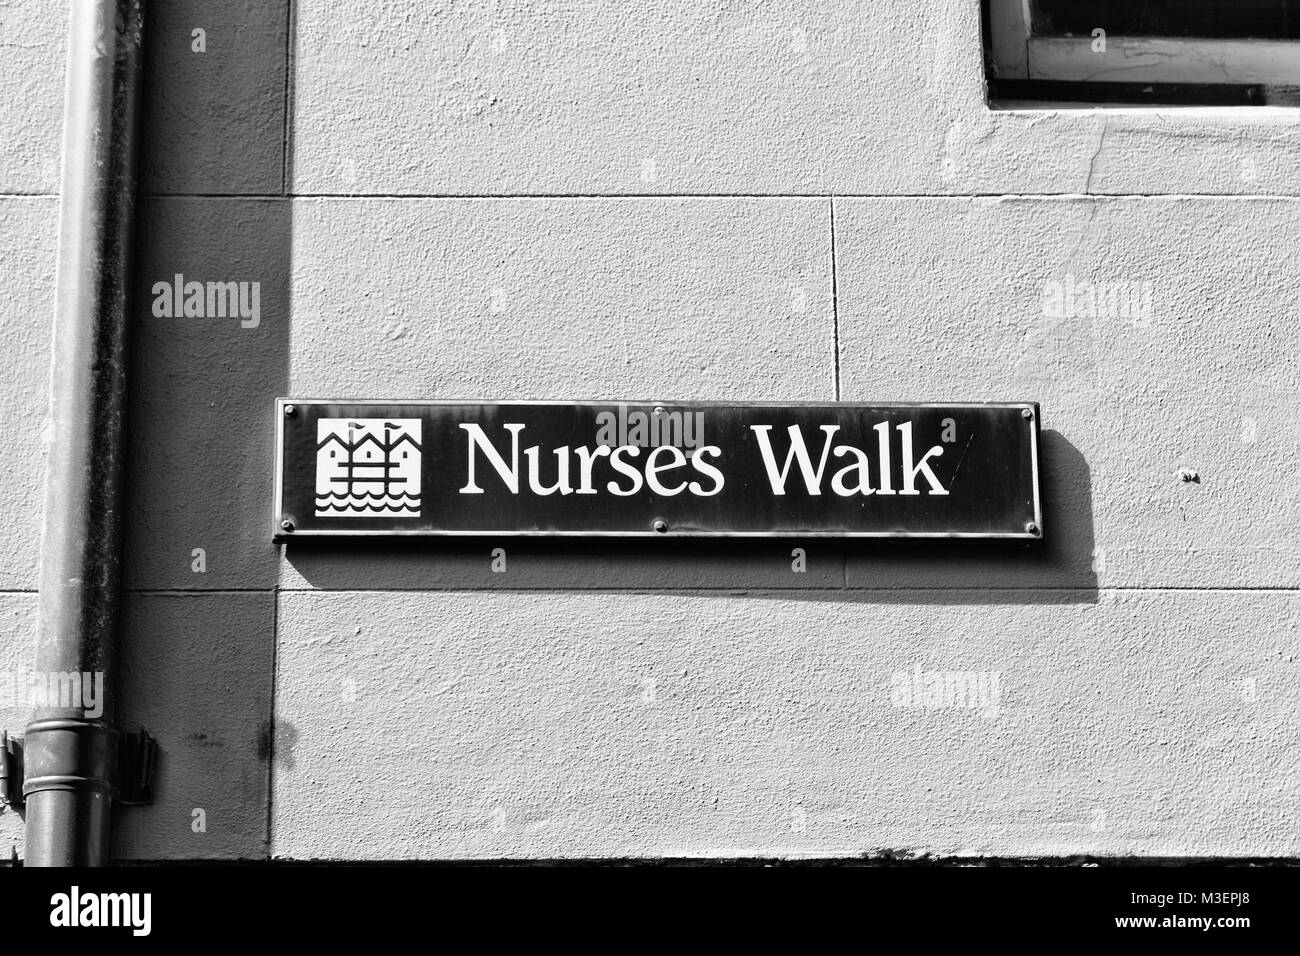 Sidney en Australie le signe de nursers street à pied dans le mur Banque D'Images